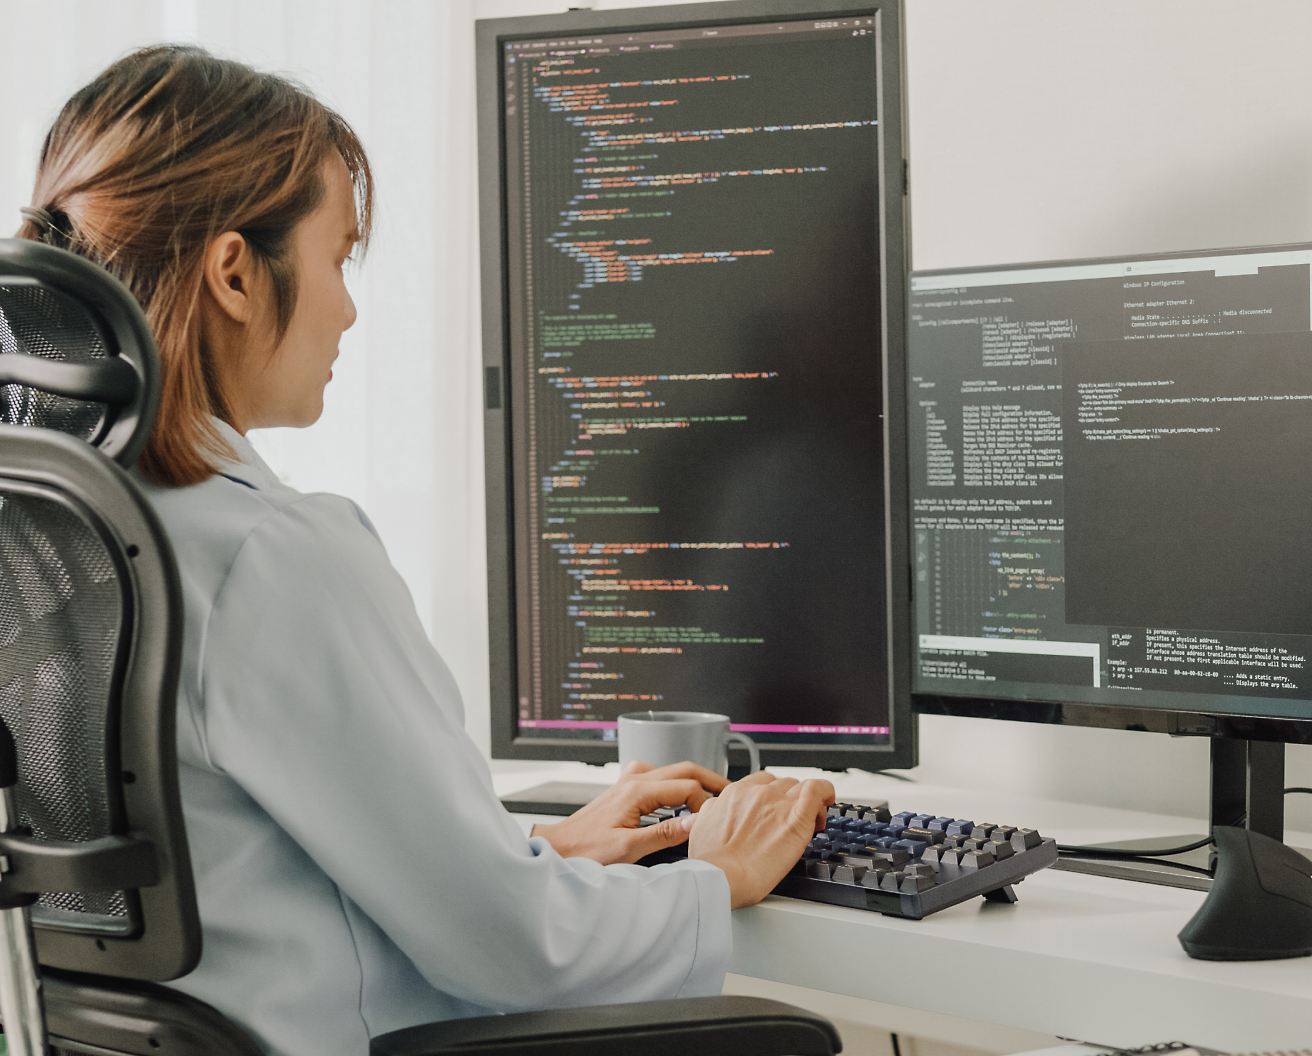 オフィス チェアに座り、プログラミング コードを表示する複数のスクリーン ディスプレイのあるコンピューターでコーディングをしている女性。